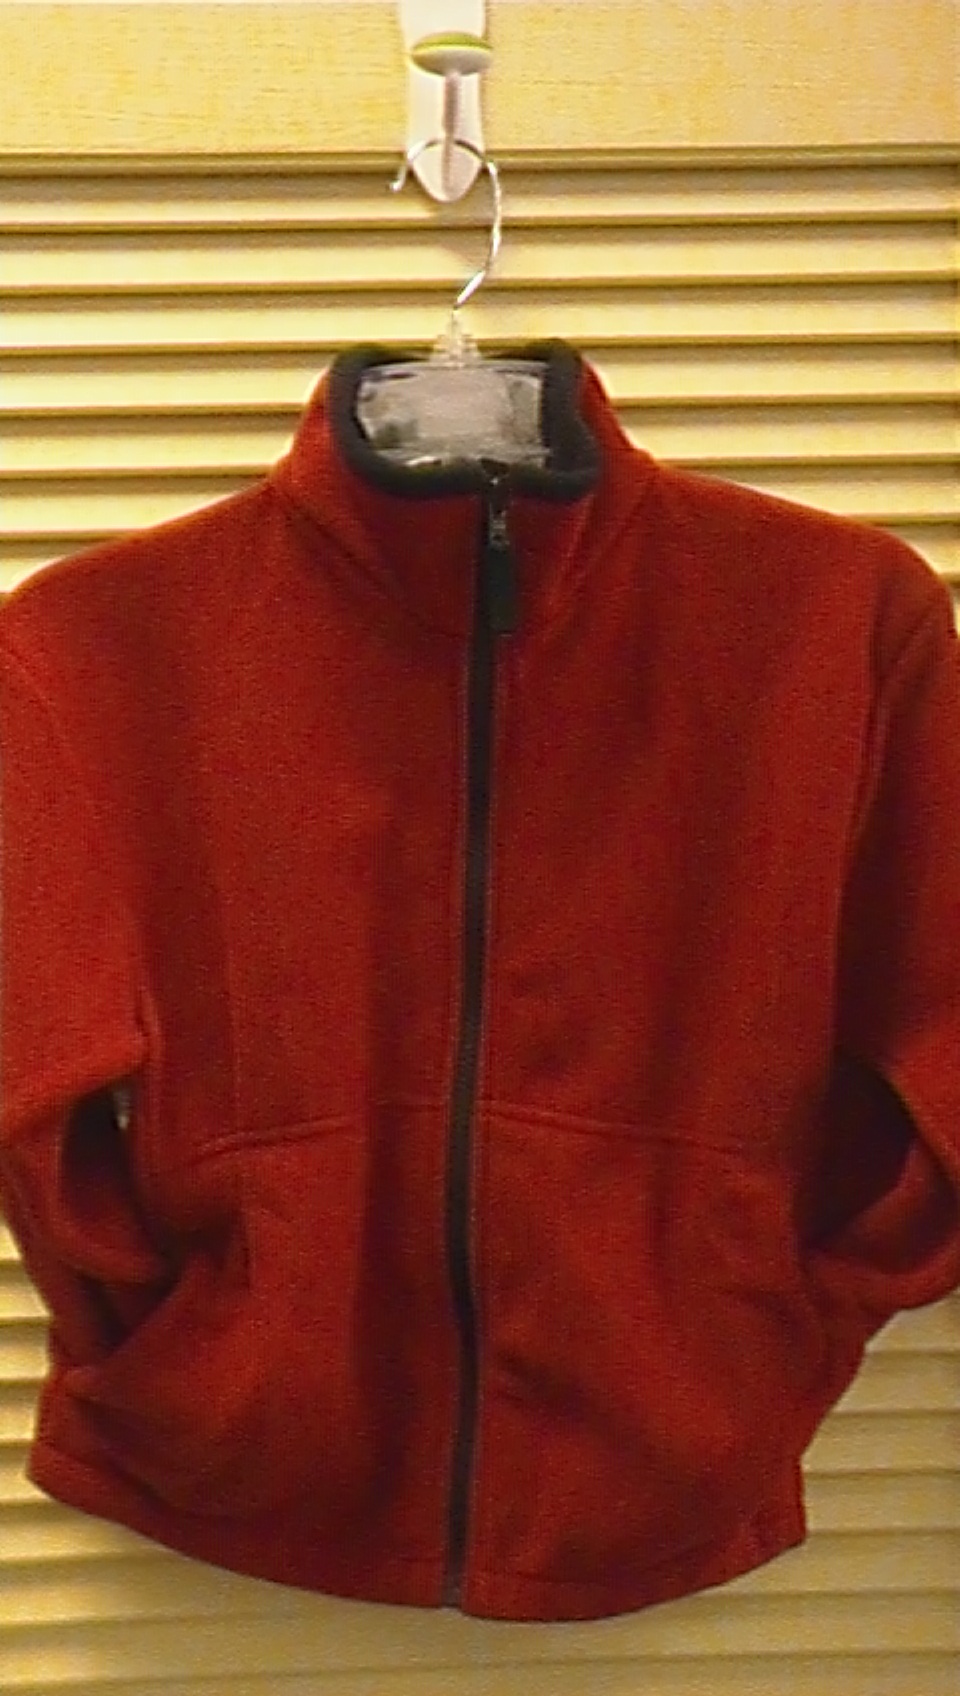 Fleece Jacket Items